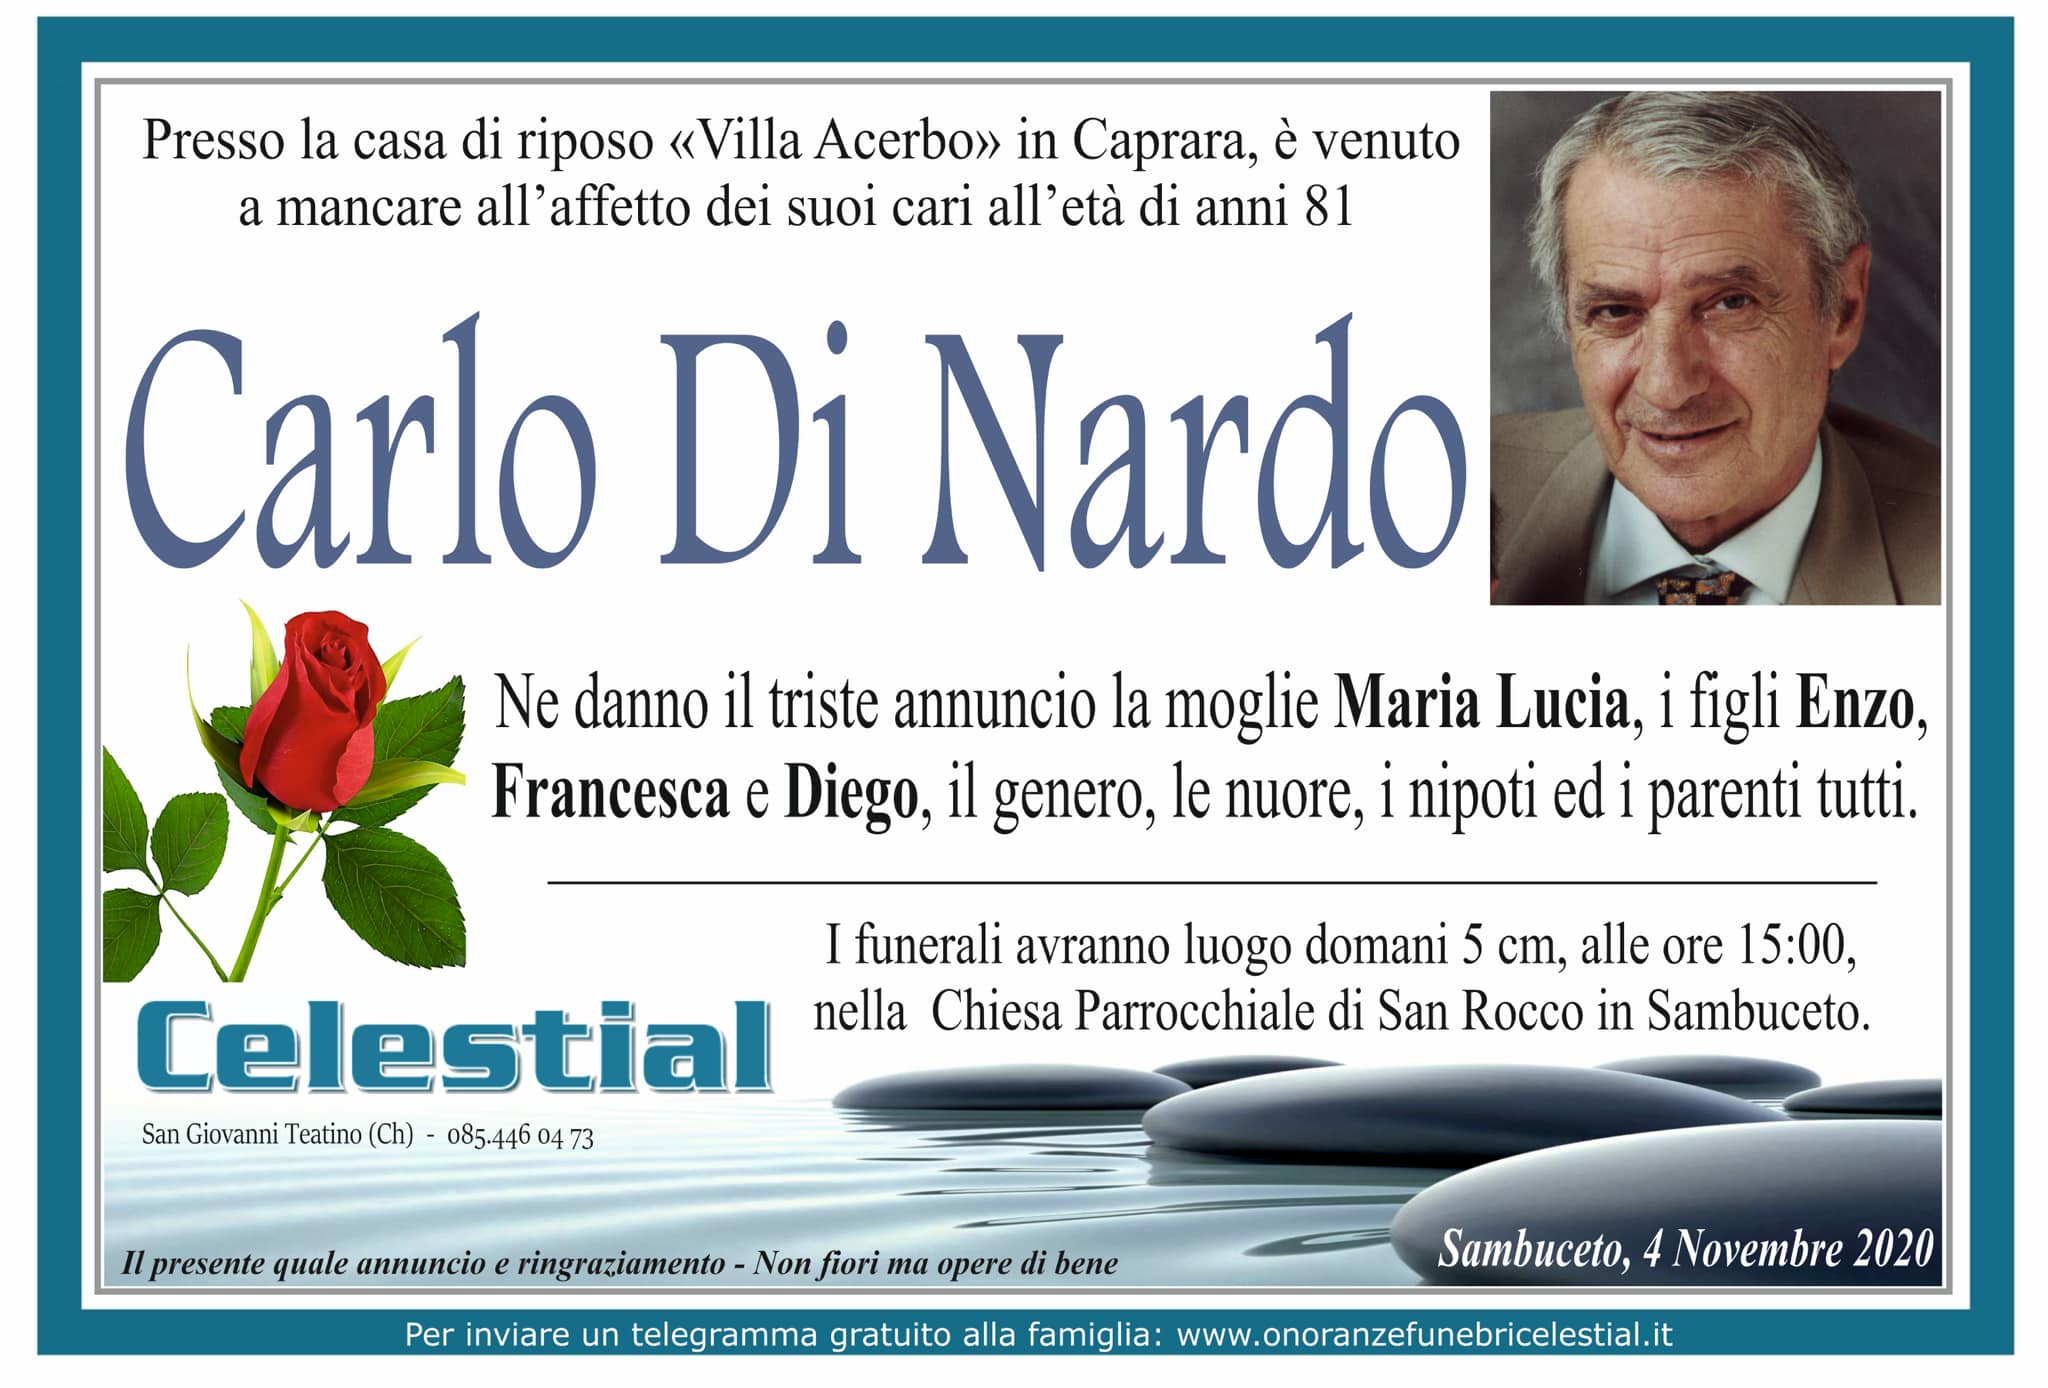 Carlo Di Nardo